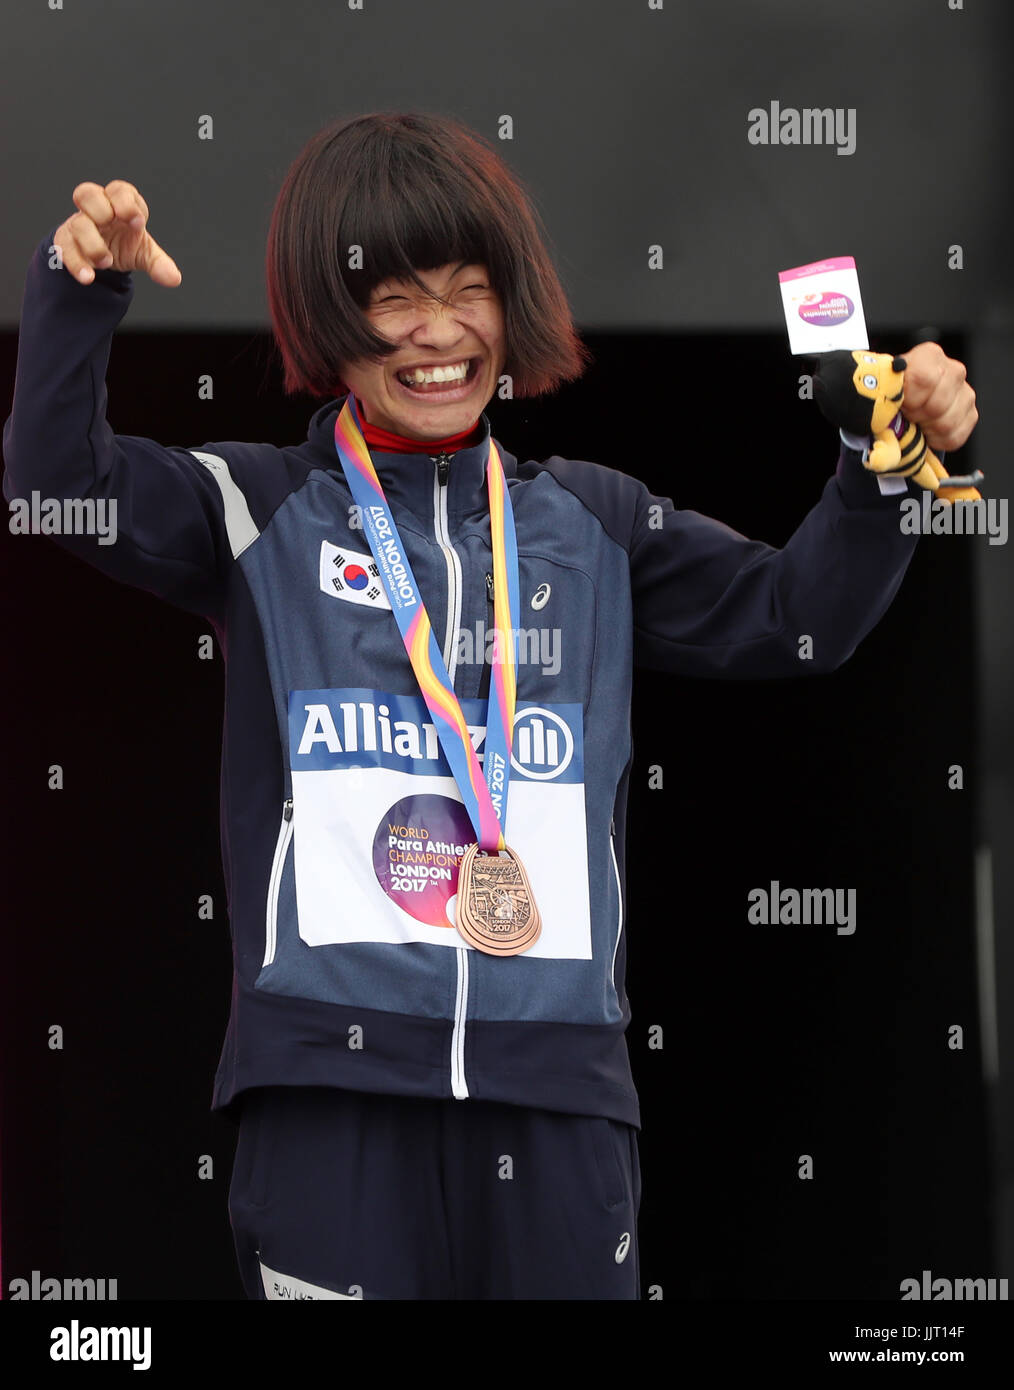 Südkoreas Min Jae Jeon mit ihrer Bronzemedaille nach der Frauen 200m T36 endgültig nach der Frauen 200m T36 tagsüber fünf der 2017 Para Leichtathletik-Weltmeisterschaften in London Stadion Stockfoto